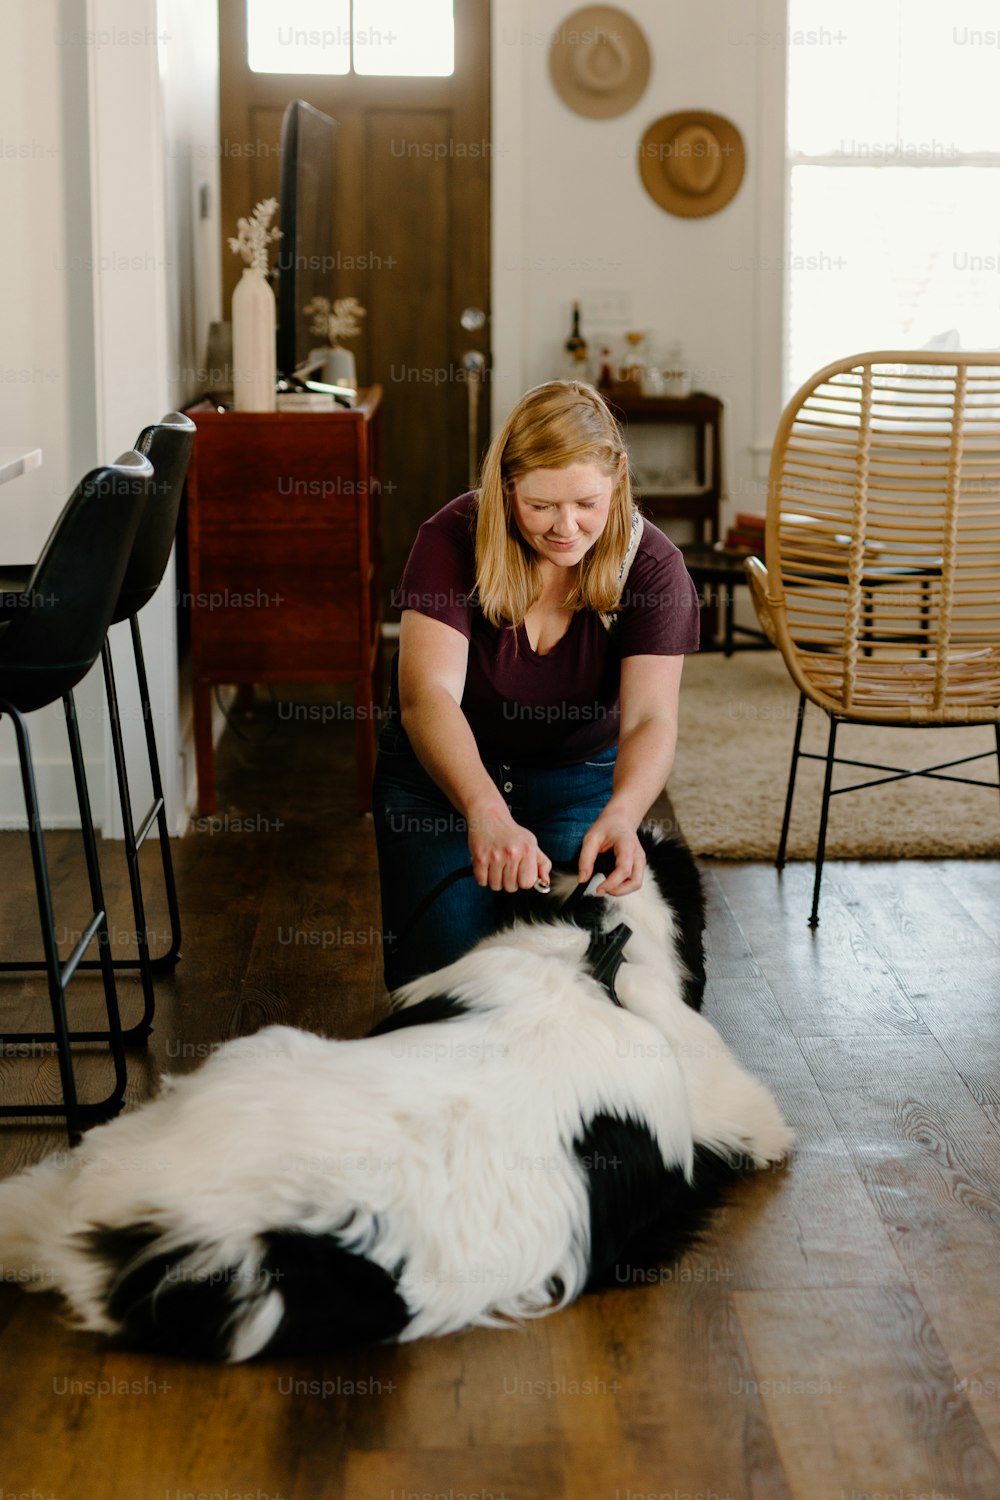 una donna seduta sul pavimento che accarezza un cane bianco e nero